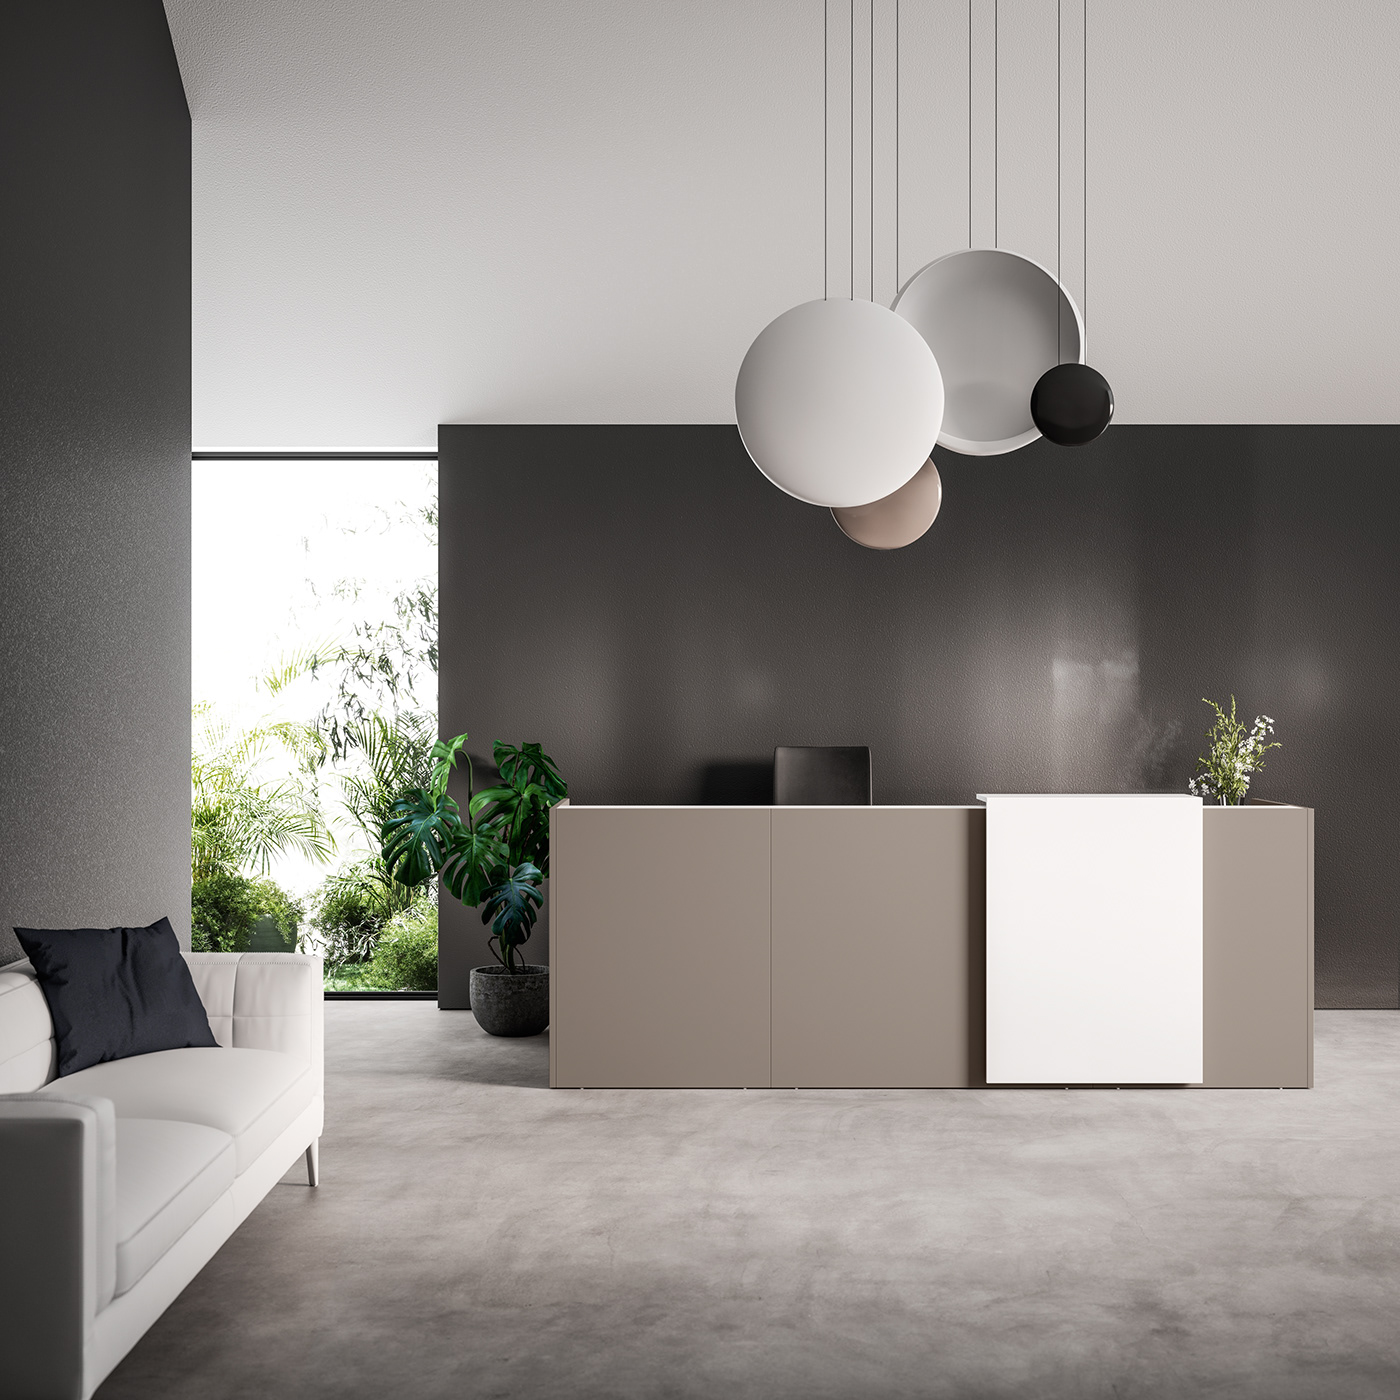 Render Office furniture design CGI minimal Interior 3D architecture product